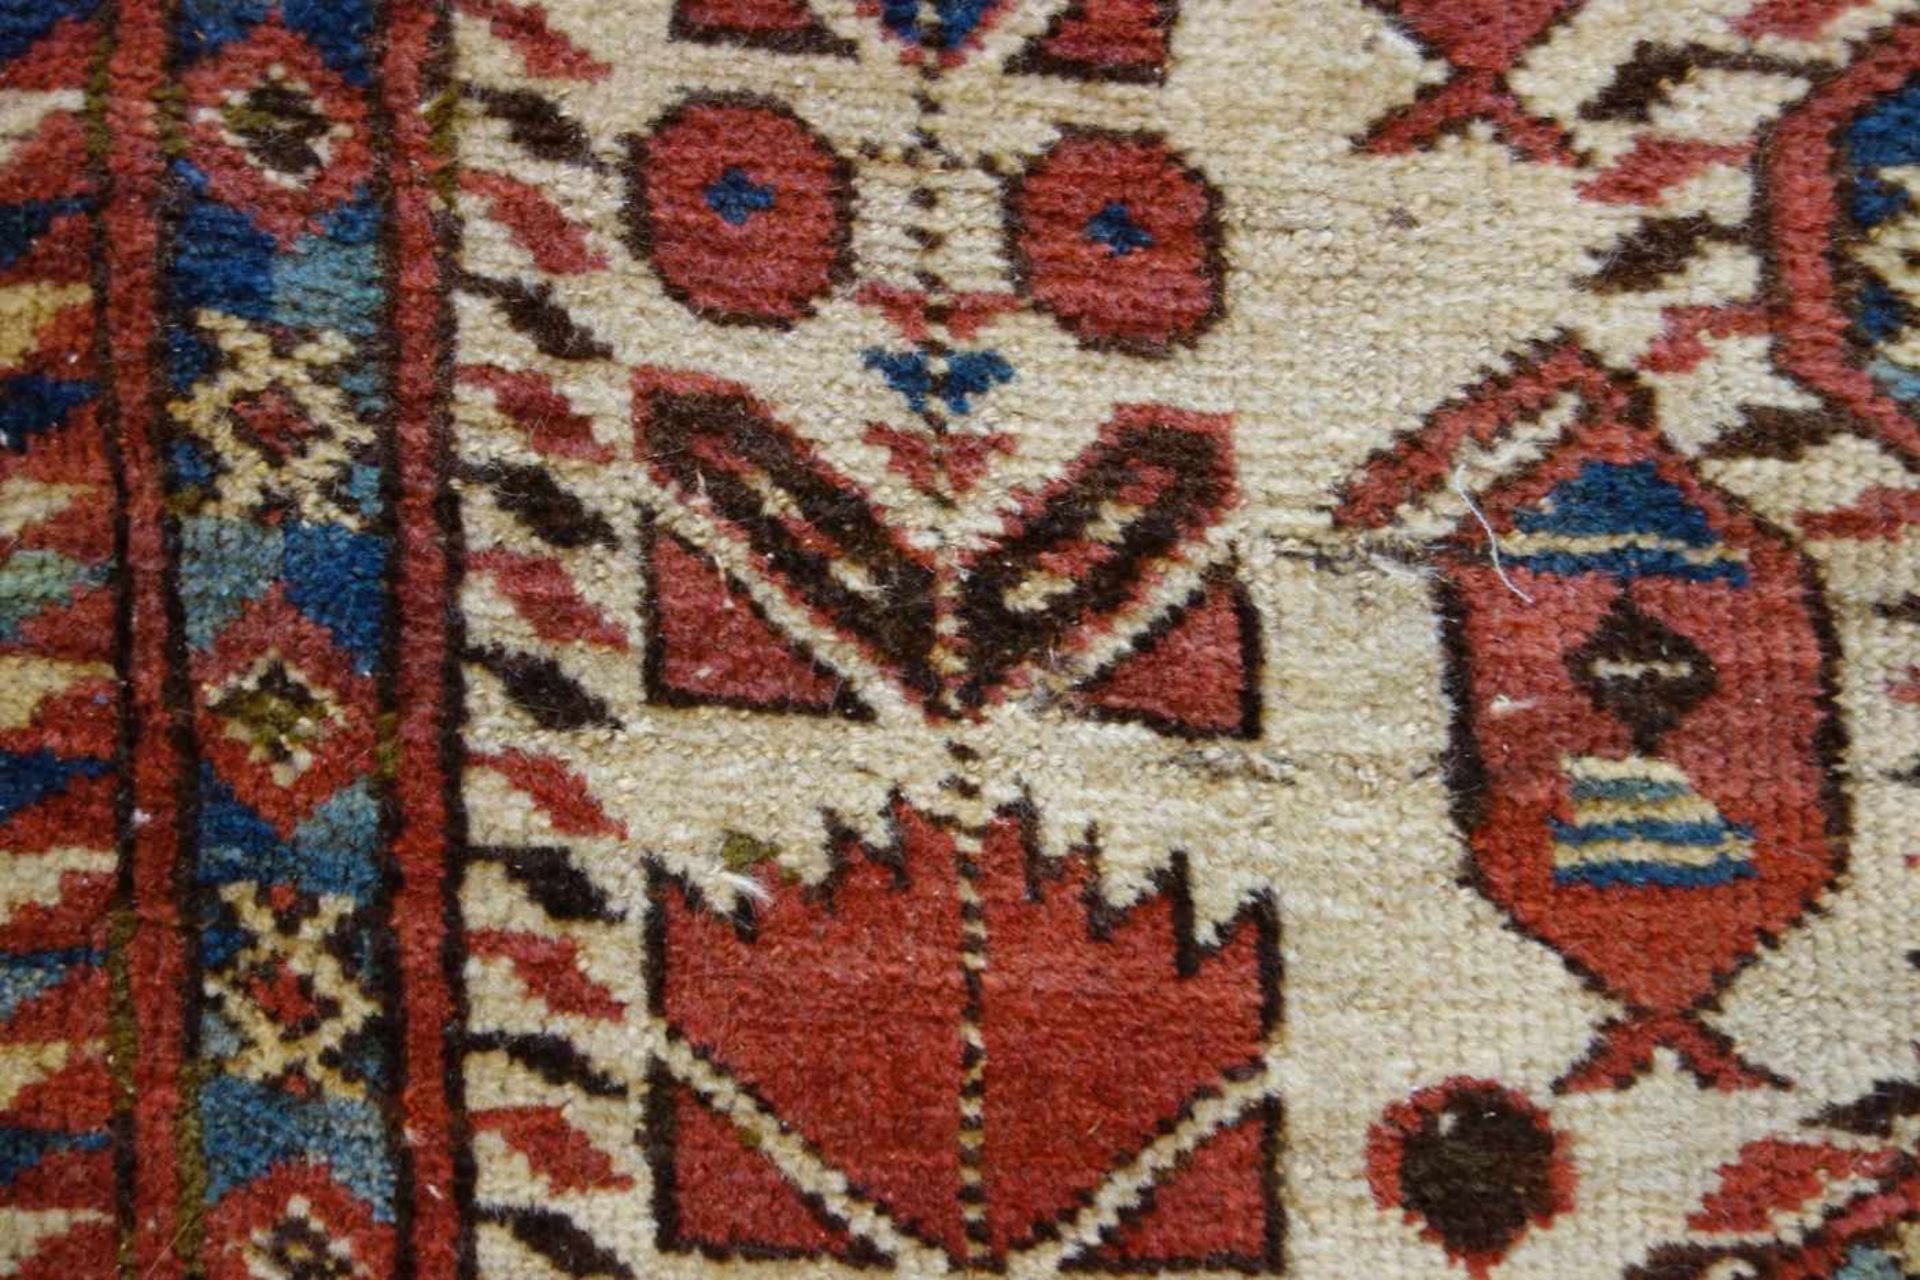 SCHMALER BESCHIR GEBETSTEPPICH / prayer rug, wohl 2. H. 19. Jh., Turkmenistan / Ersari-Beschir ( - Image 4 of 24